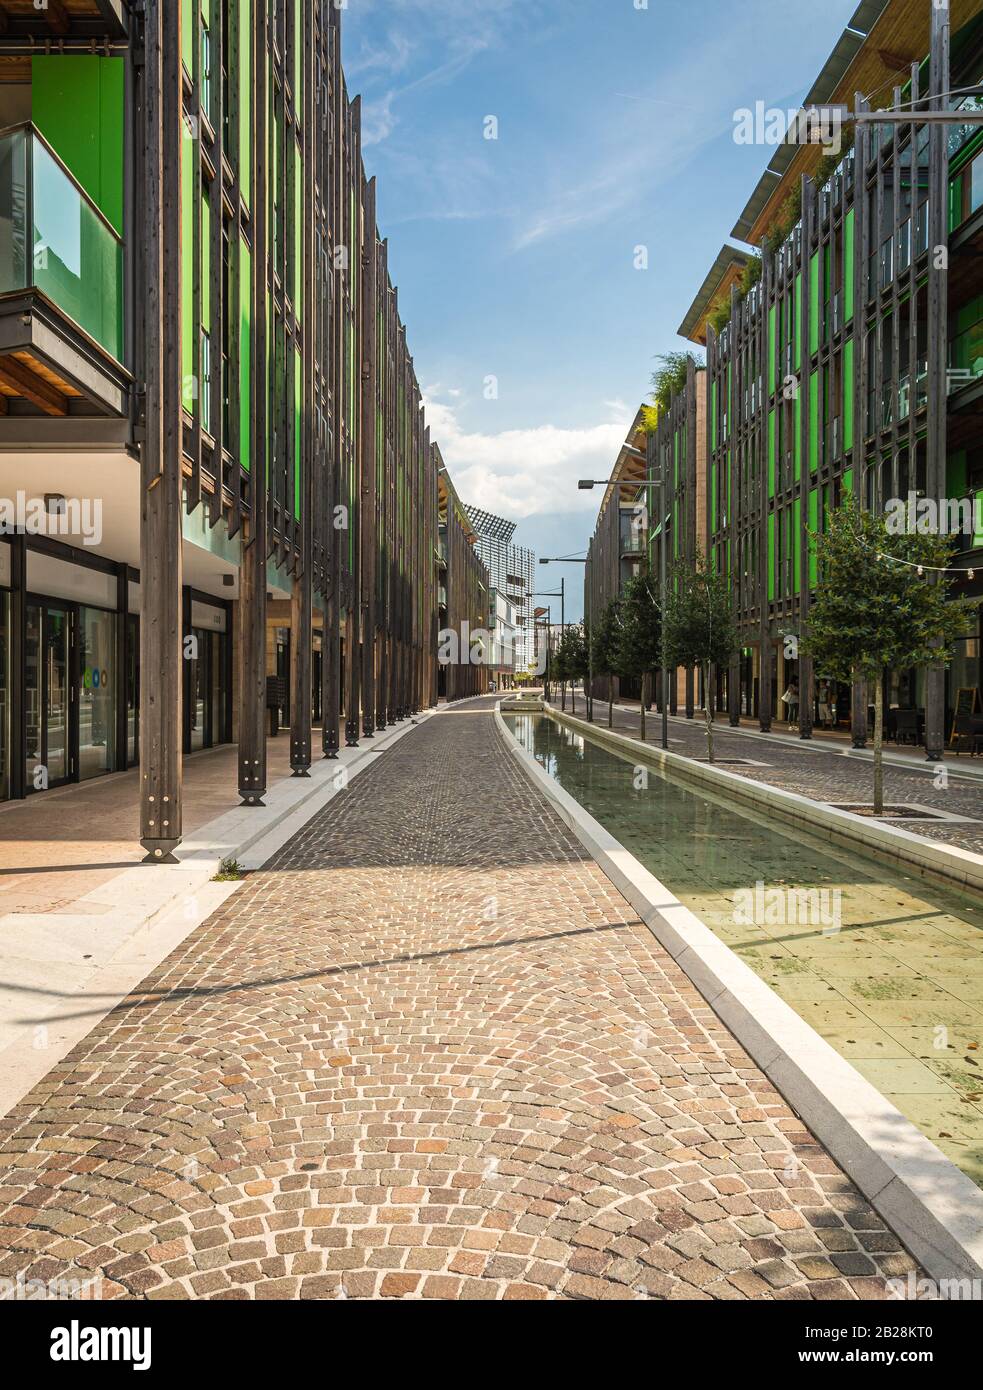 Le Albere barrio residencial de Trentto diseñado por el famoso arquitecto italiano Renzo Piano, año 2013. Foto de stock